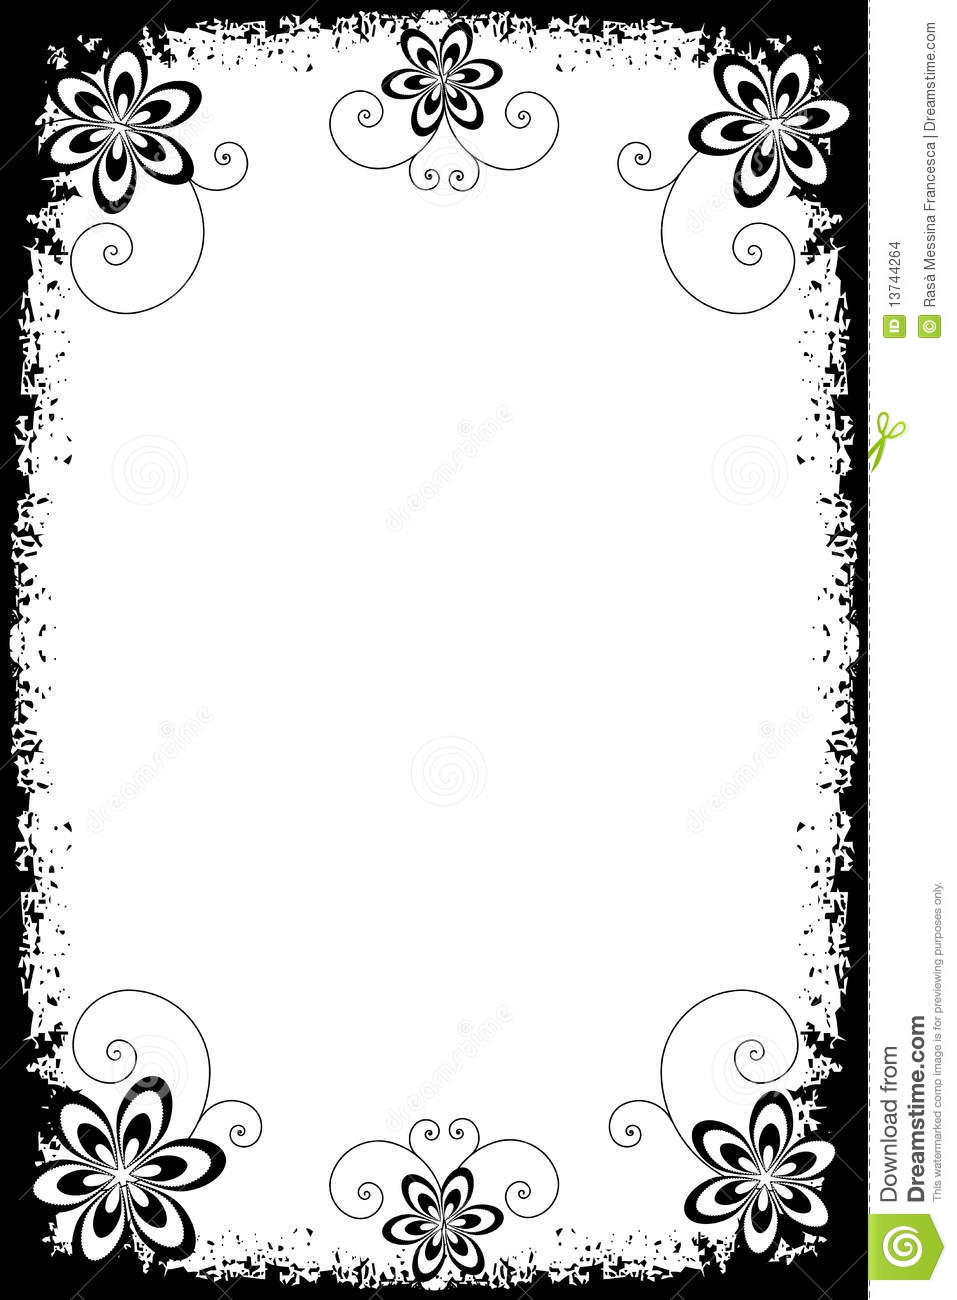 Border Designs Black And White Widescreen HD Wallpaper